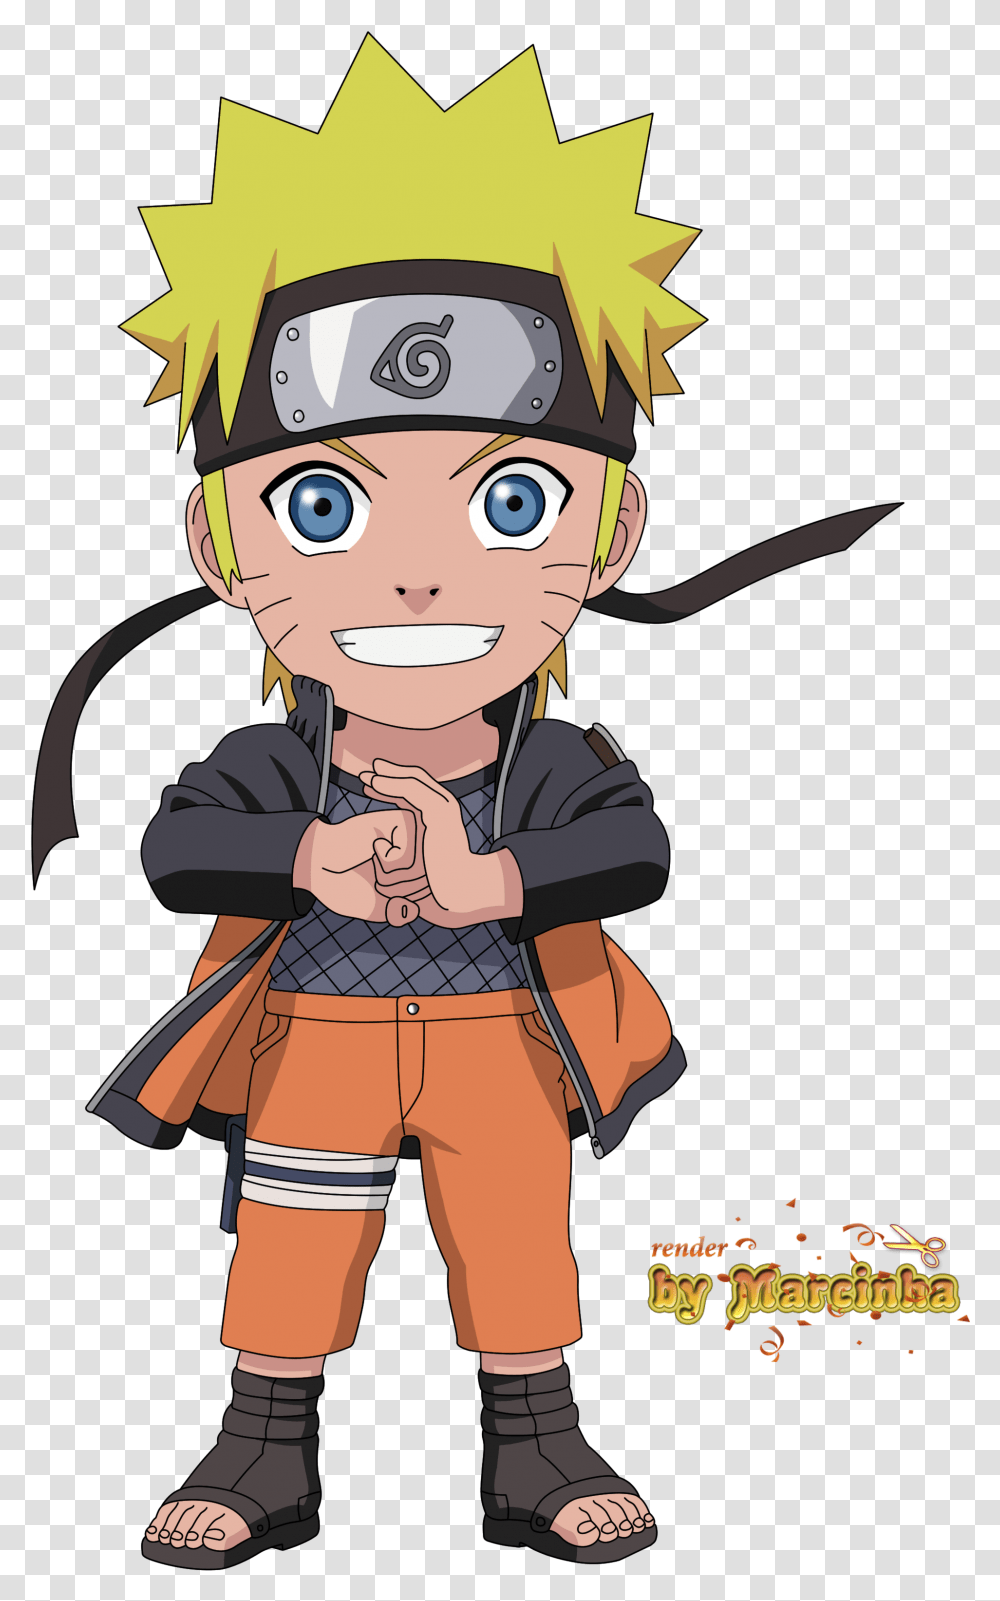 Naruto Chibi Naruto Characters Chibi Naruto, Person, Human, Costume Transparent Png